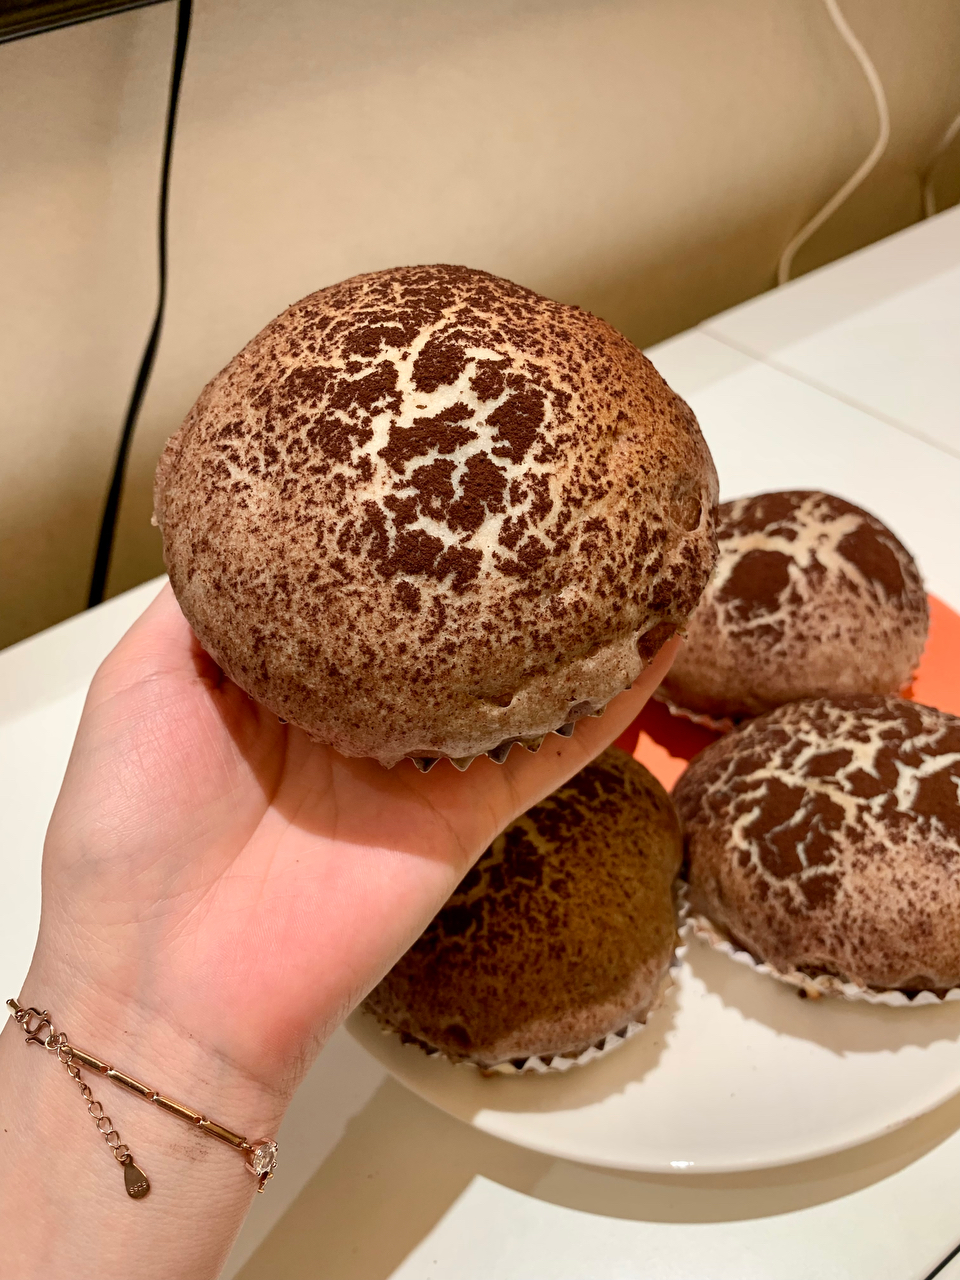 可可爱爱的蘑菇云巧克力面包㊙️小朋友最爱